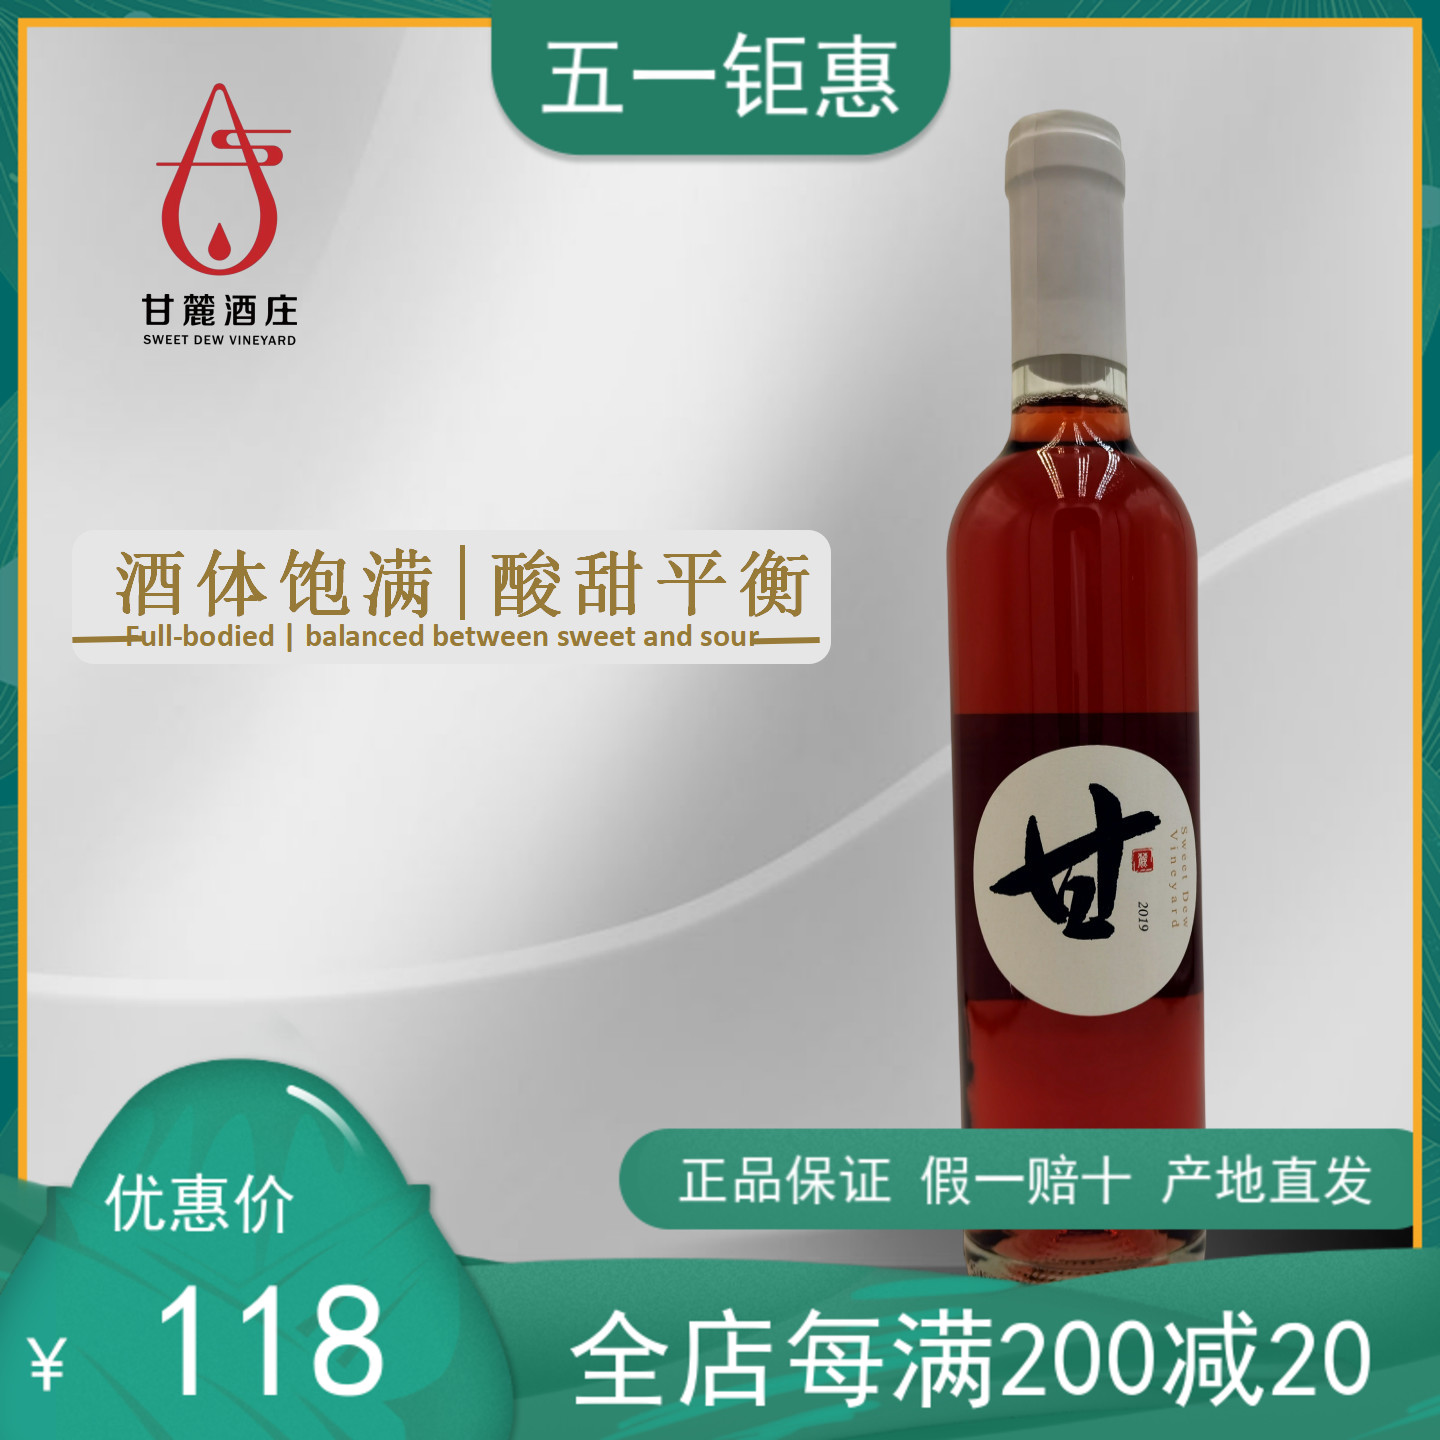 【甜型桃红】宁夏甘麓酒庄20年甜型桃红葡萄酒